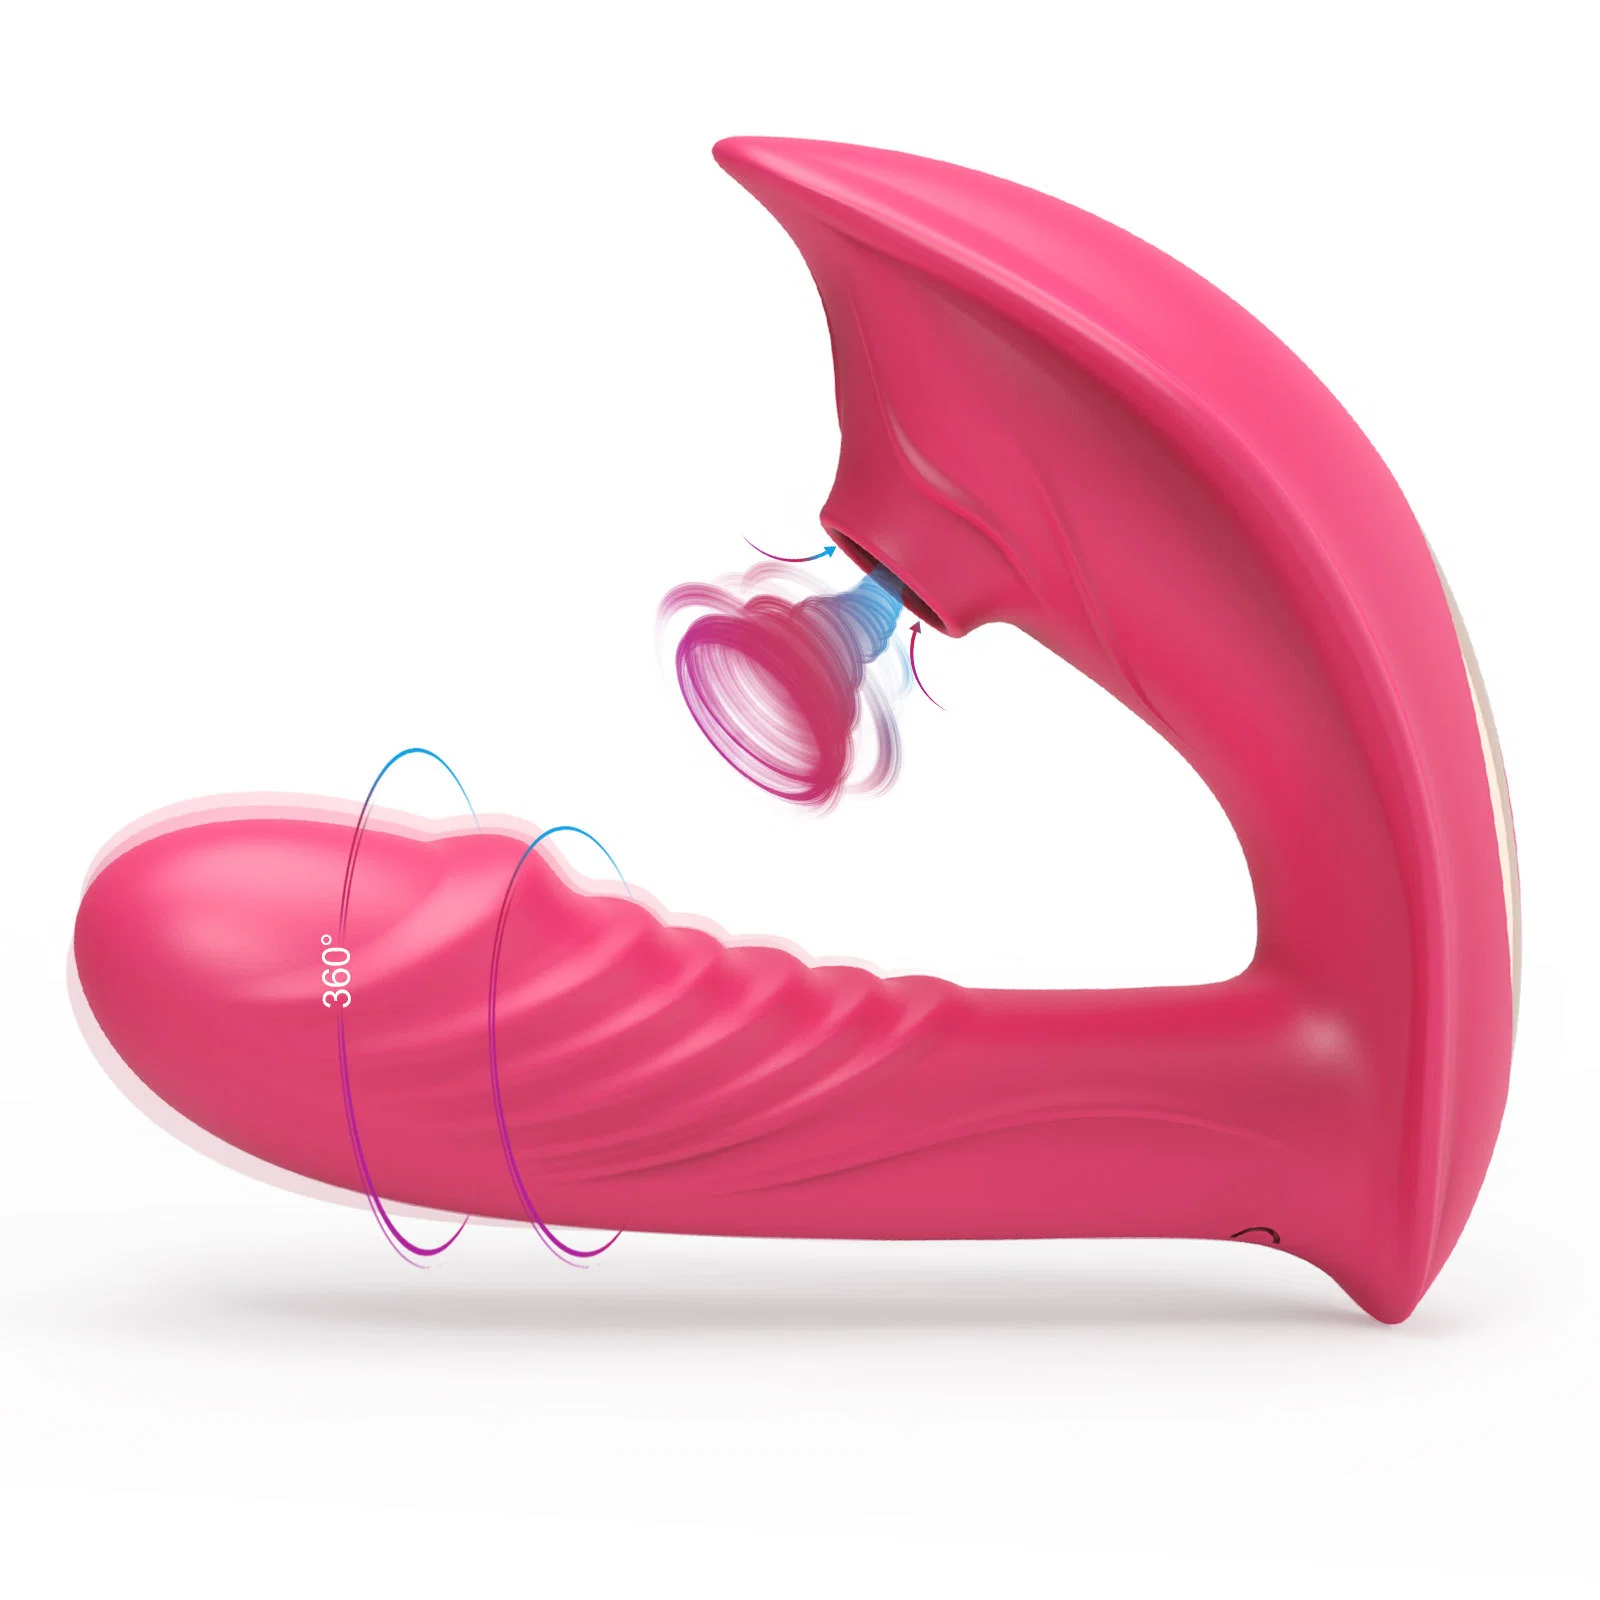 Venta caliente Vagina chupando vibrador 10 velocidades vibra ventosa de succión estimulador de clitoris Sexo Oral sexo los juguetes eróticos para mujeres chupando vibrador